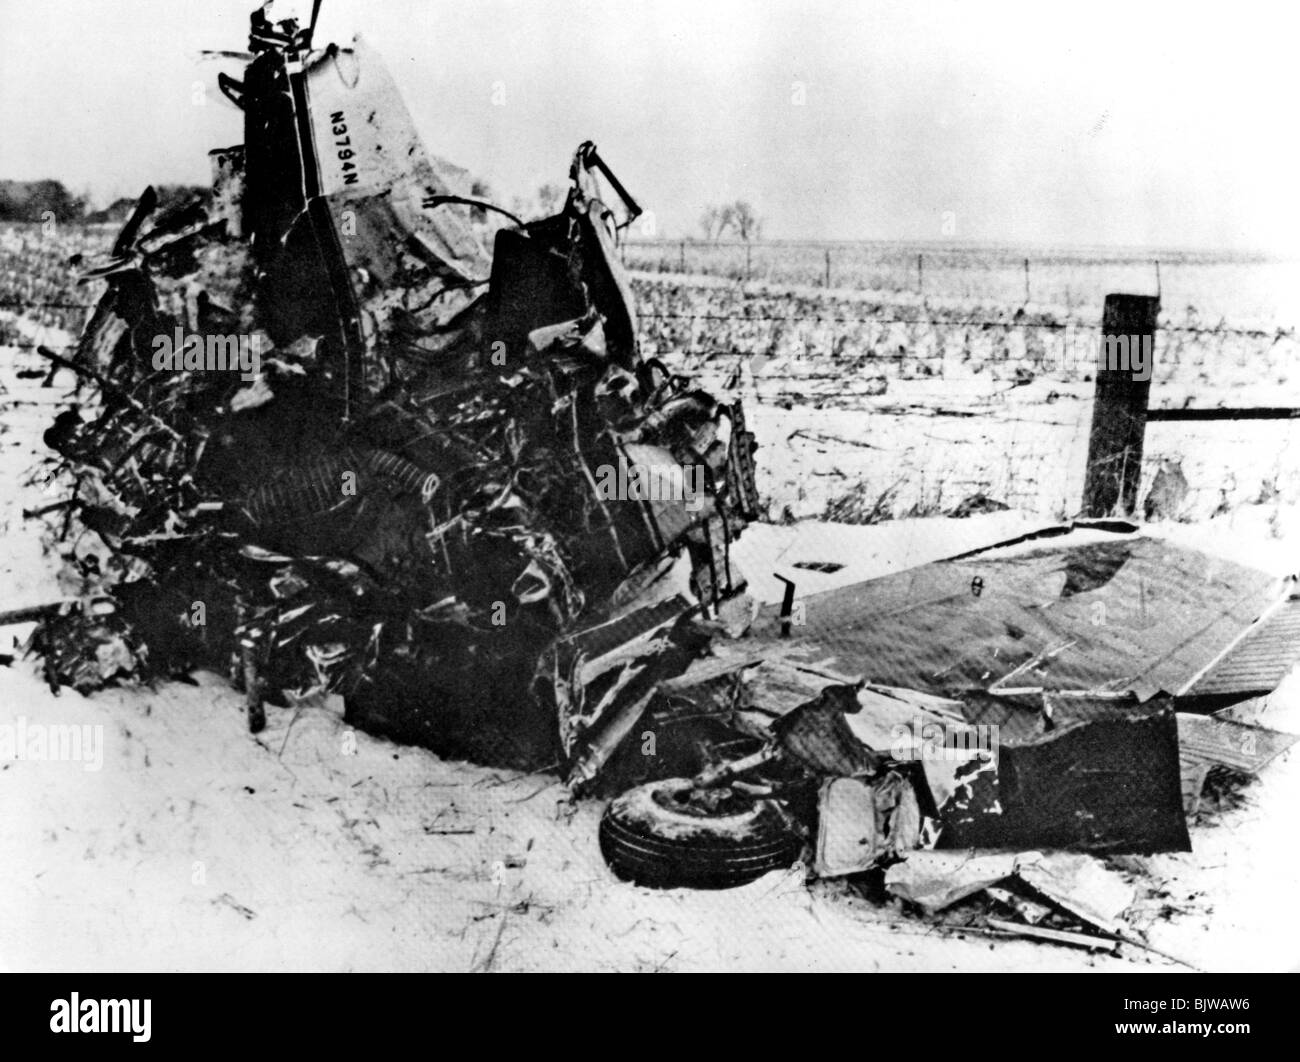 BUDDY HOLLY - relitto di velivoli leggeri in cui Holly, Big Bopper e Ritchie Valens morì in chiaro lago d'acqua,Iowa, 3 Feb 1959 Foto Stock